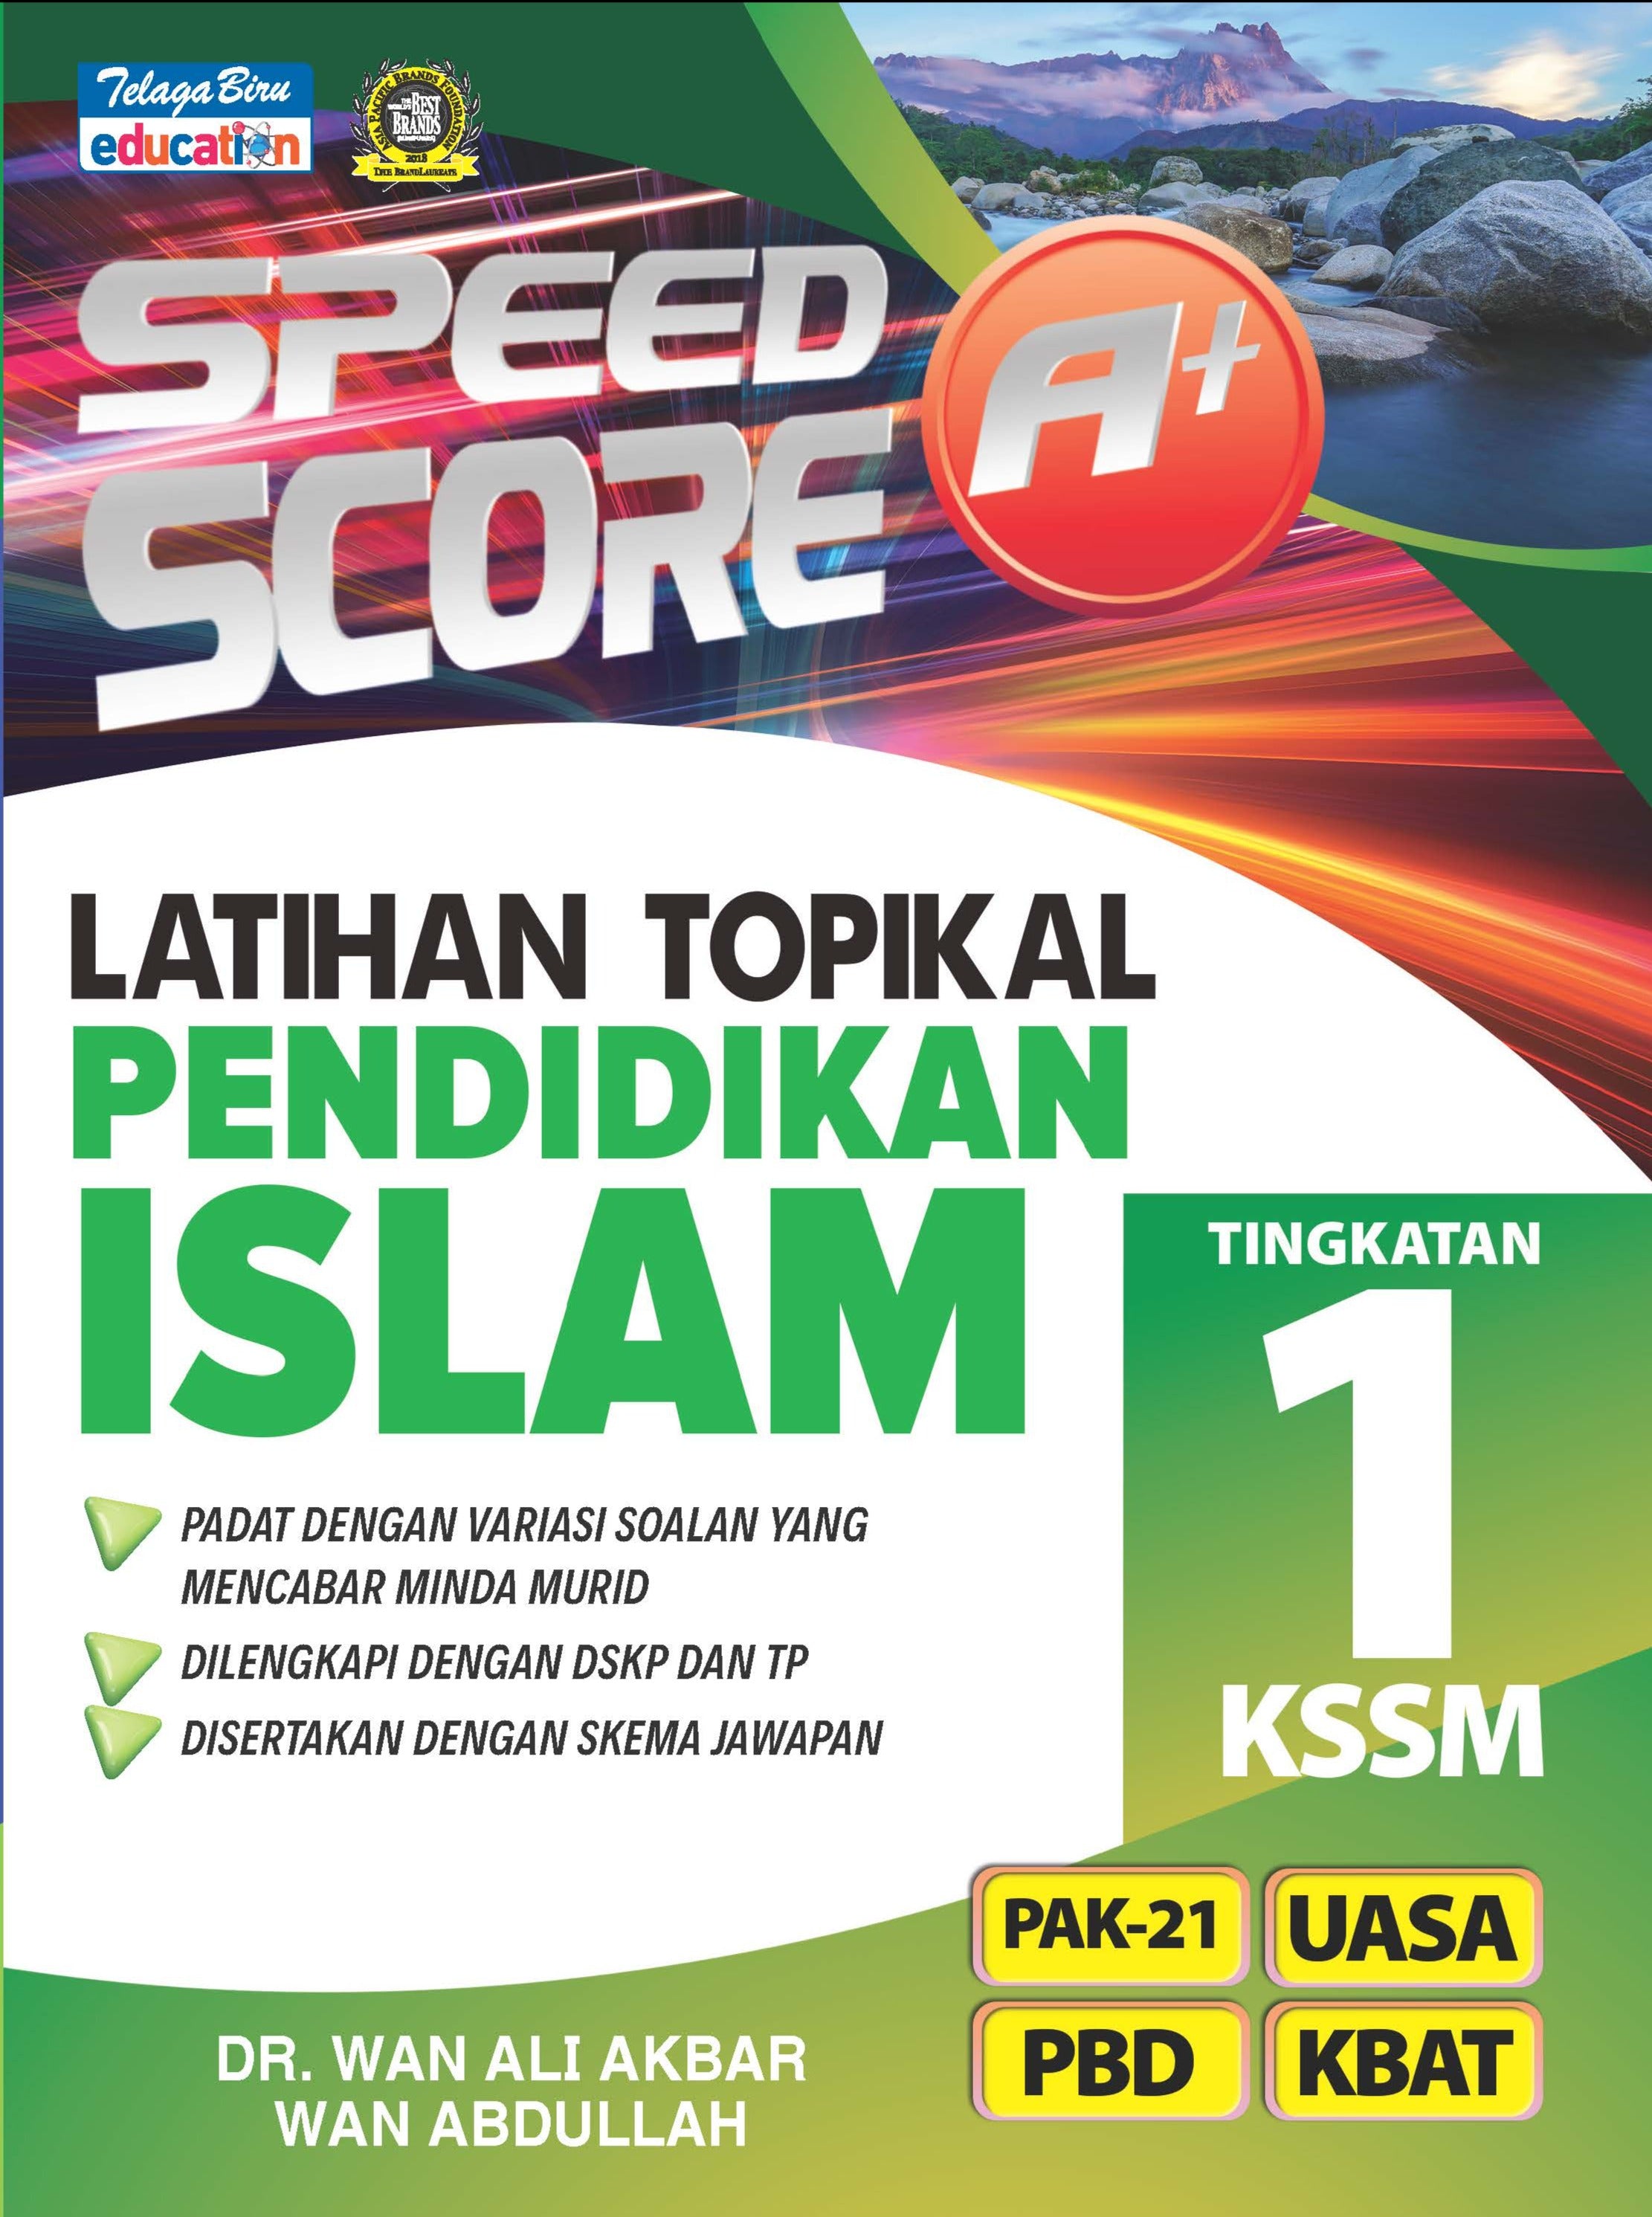 Speed Score A+ Latihan Topikal Pendidikan Islam Tingkatan 1 - (TBBS1331)